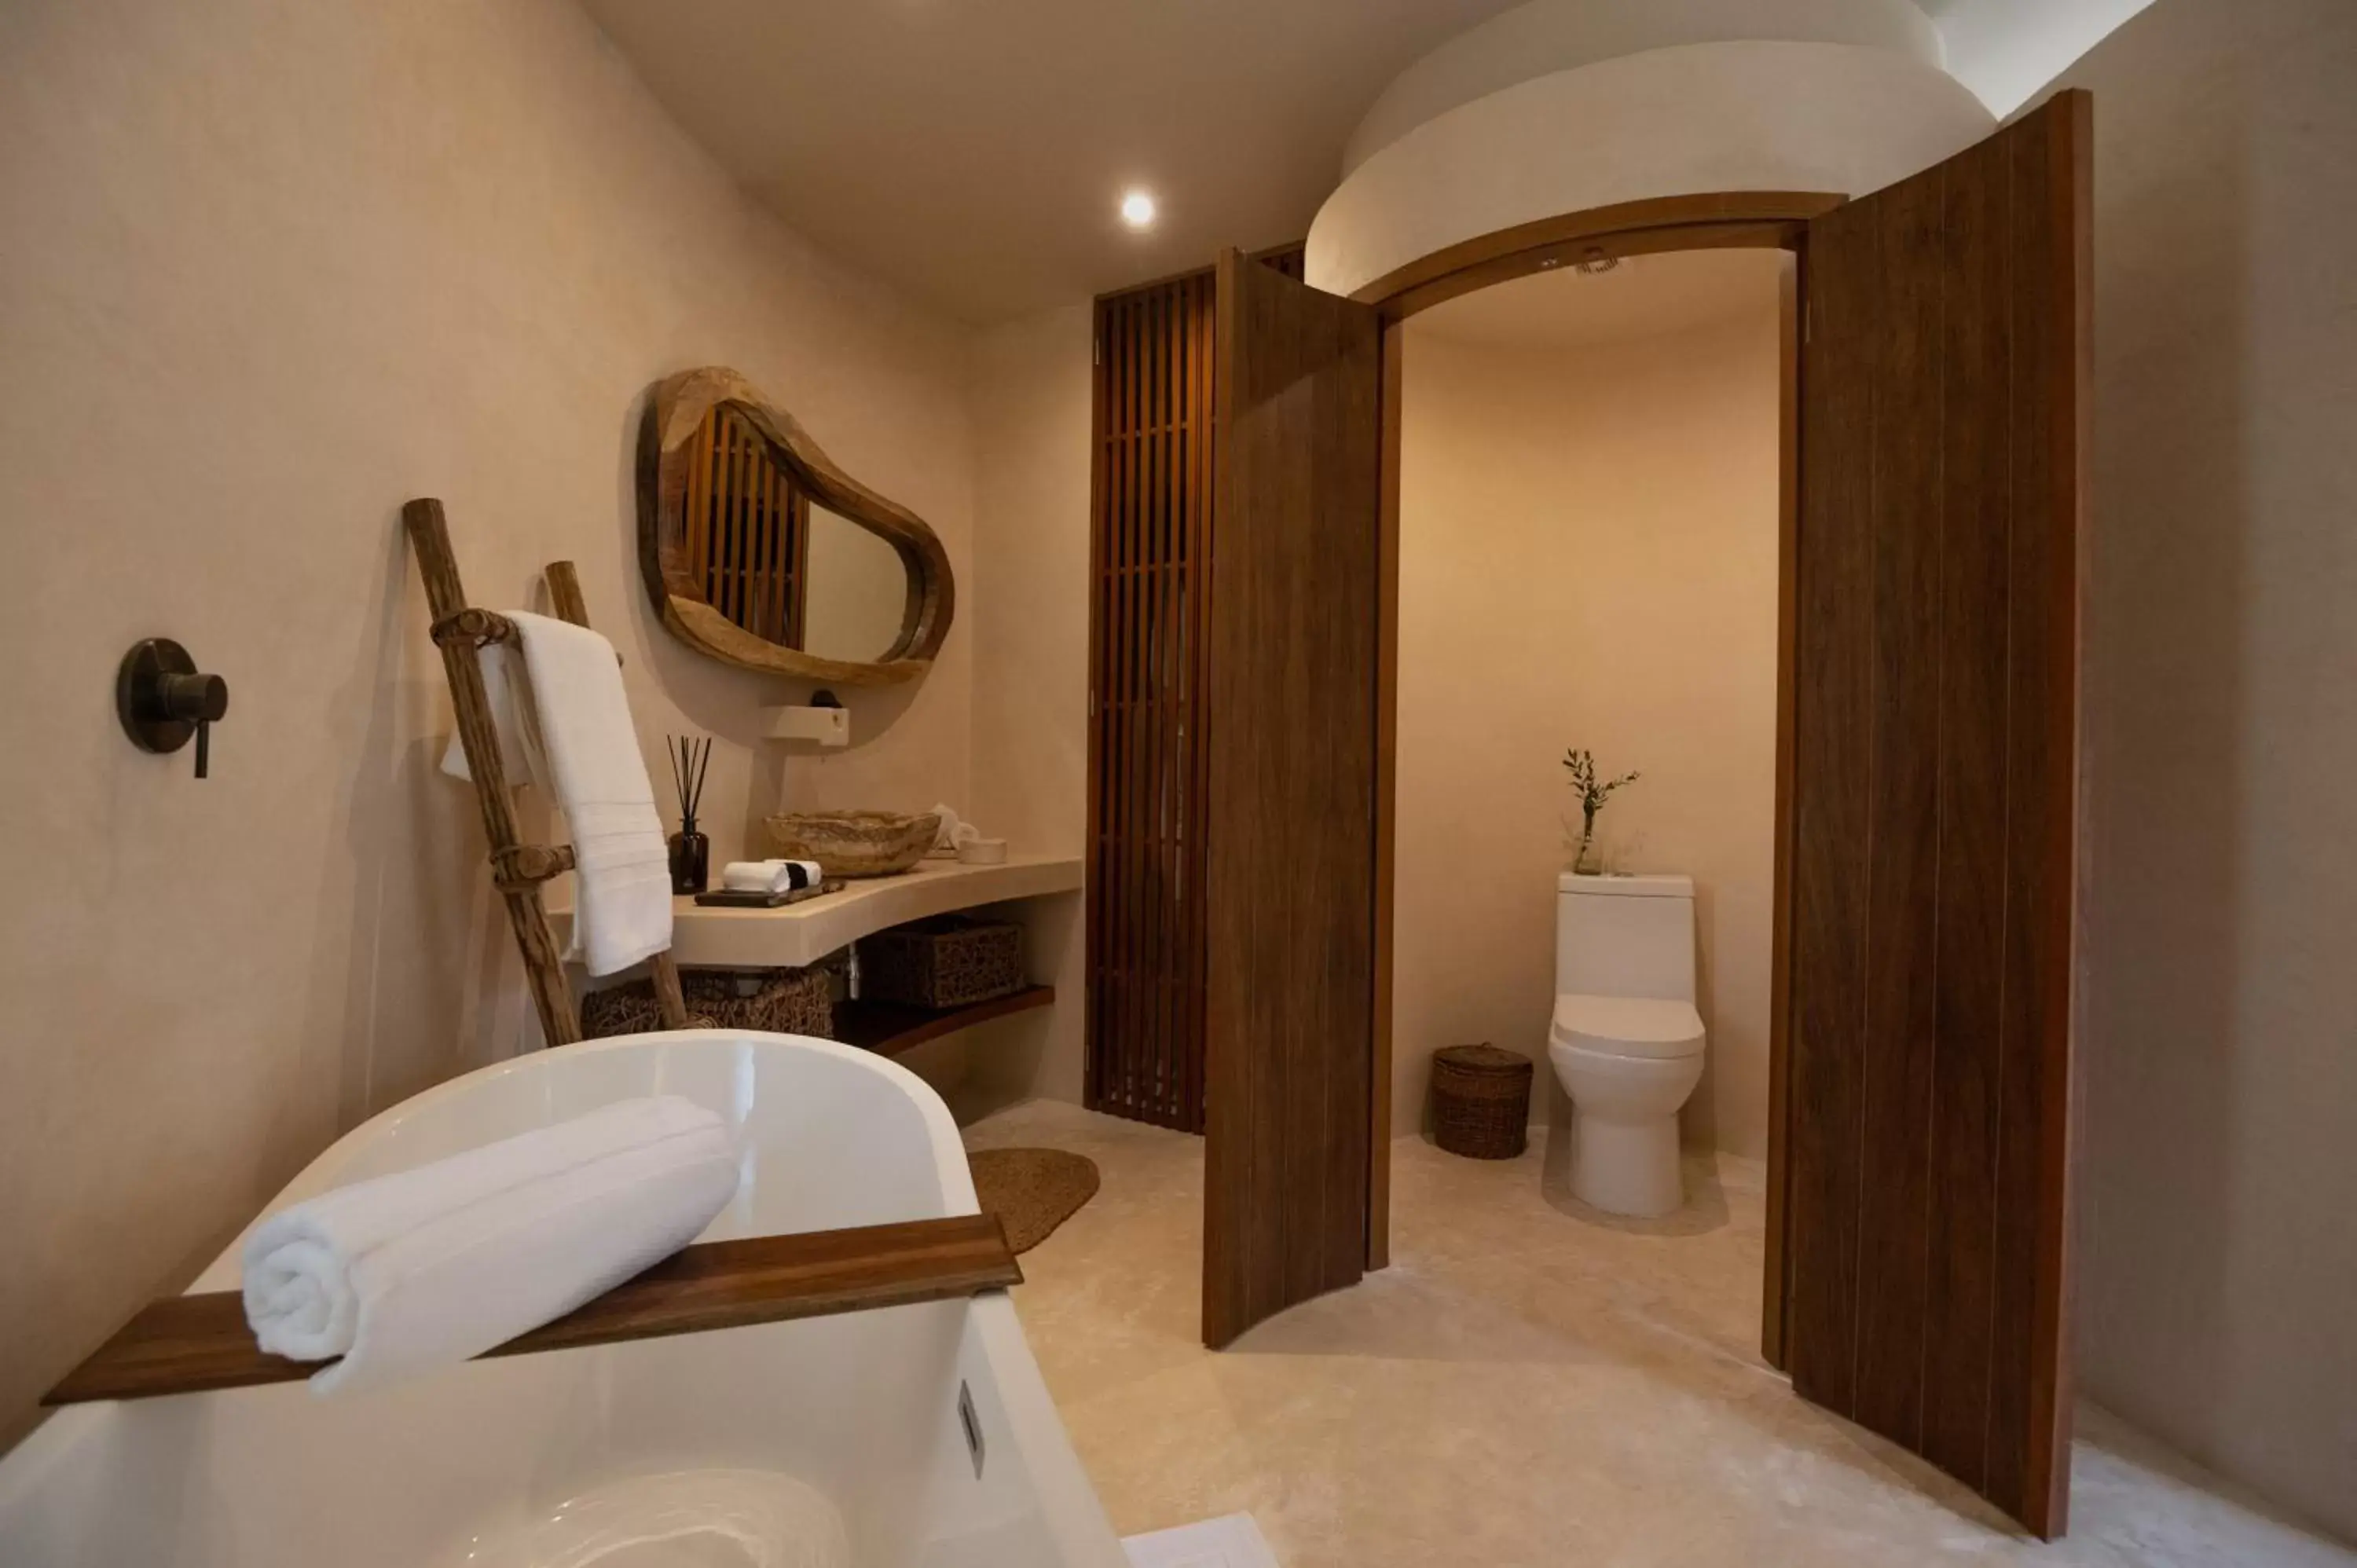 Toilet, Bathroom in Romantic Rubi Tulum